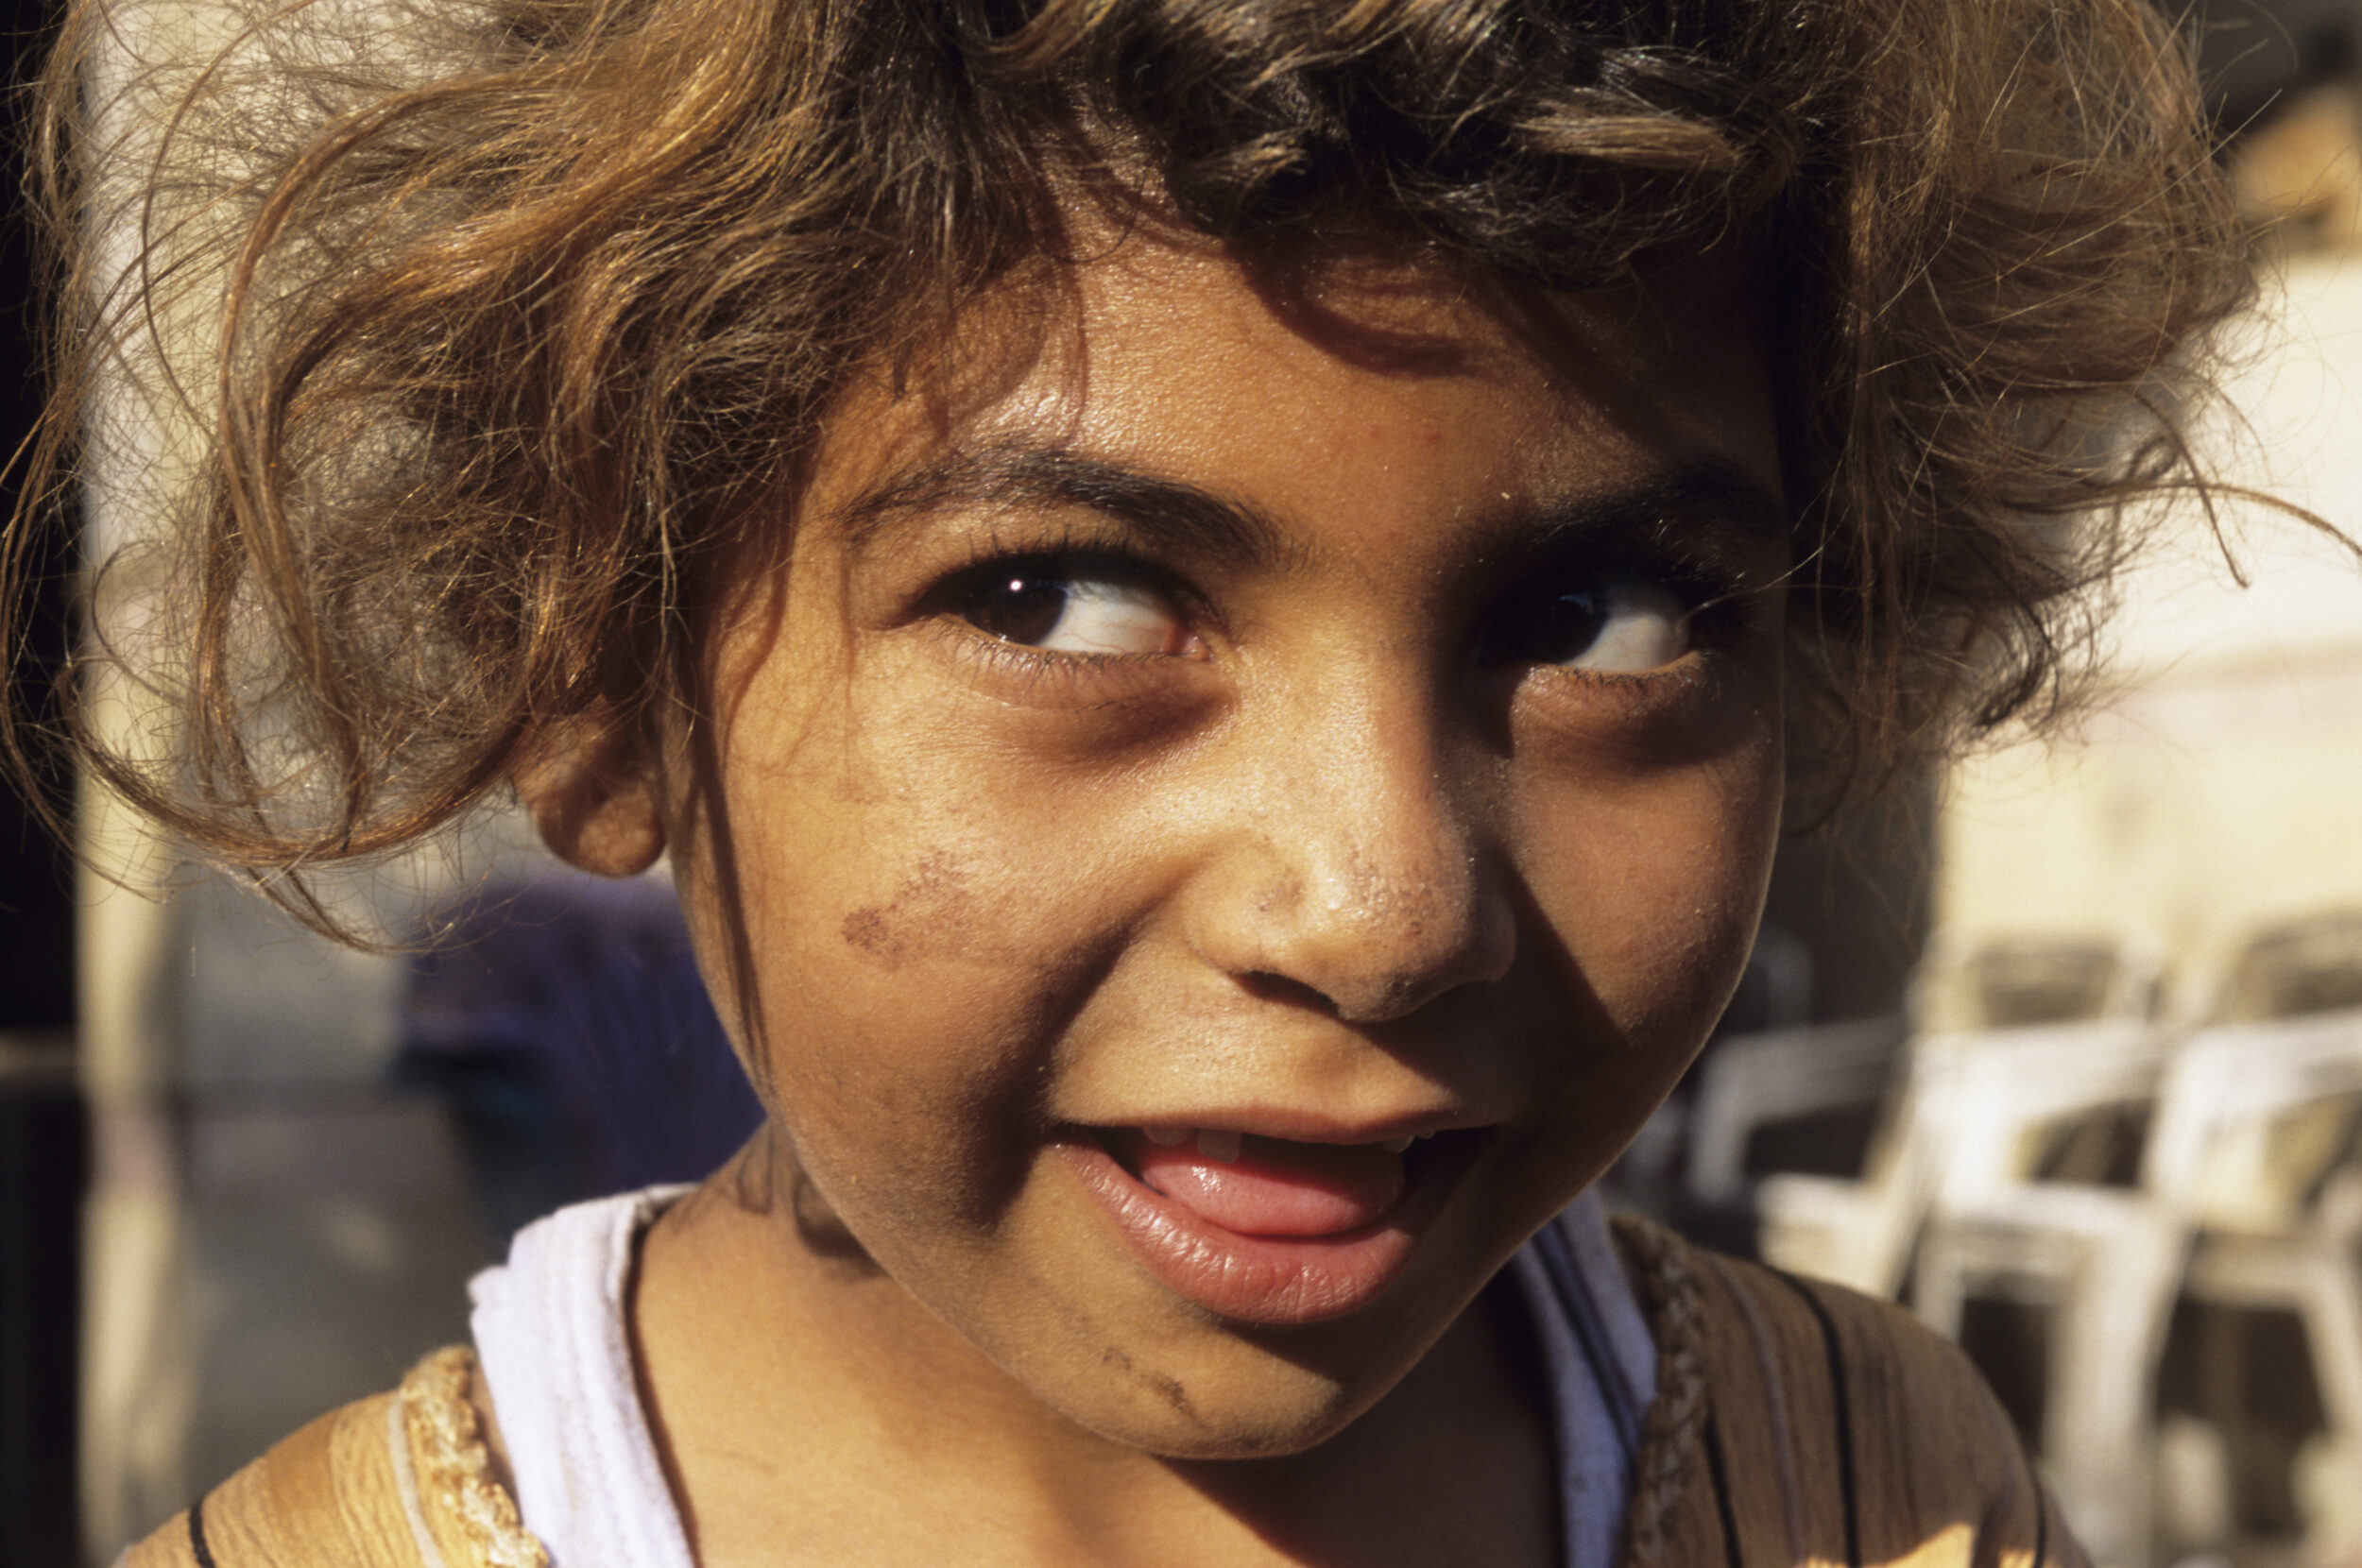 Portrait d'une enfant chiffonnière dans les rue du quartier du Mokattam au Caire.